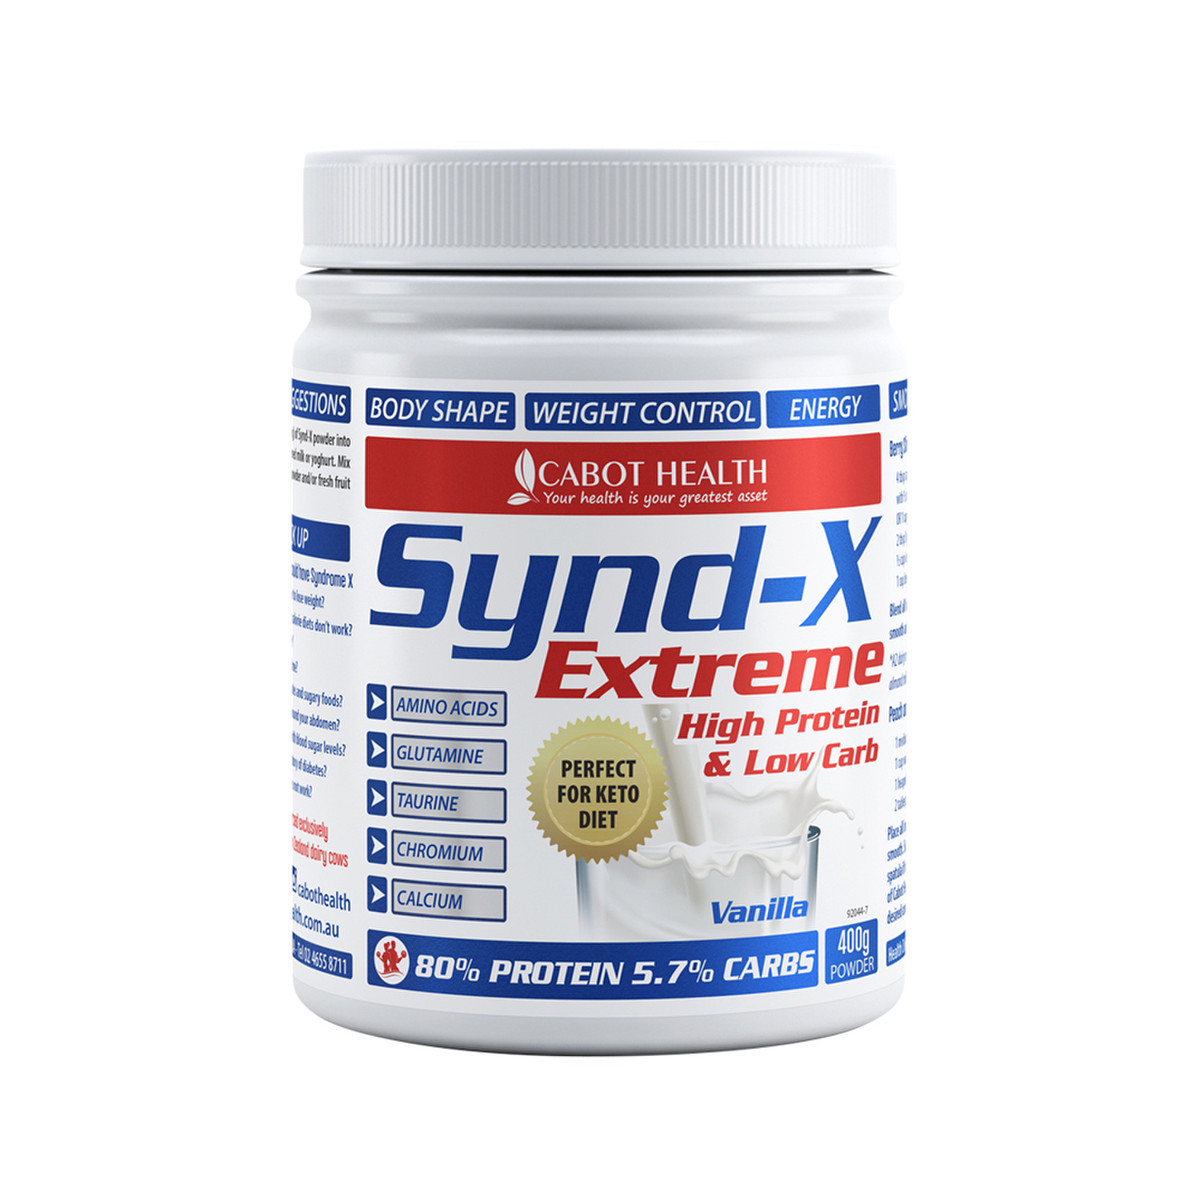 Synd X Protein Powder 400g